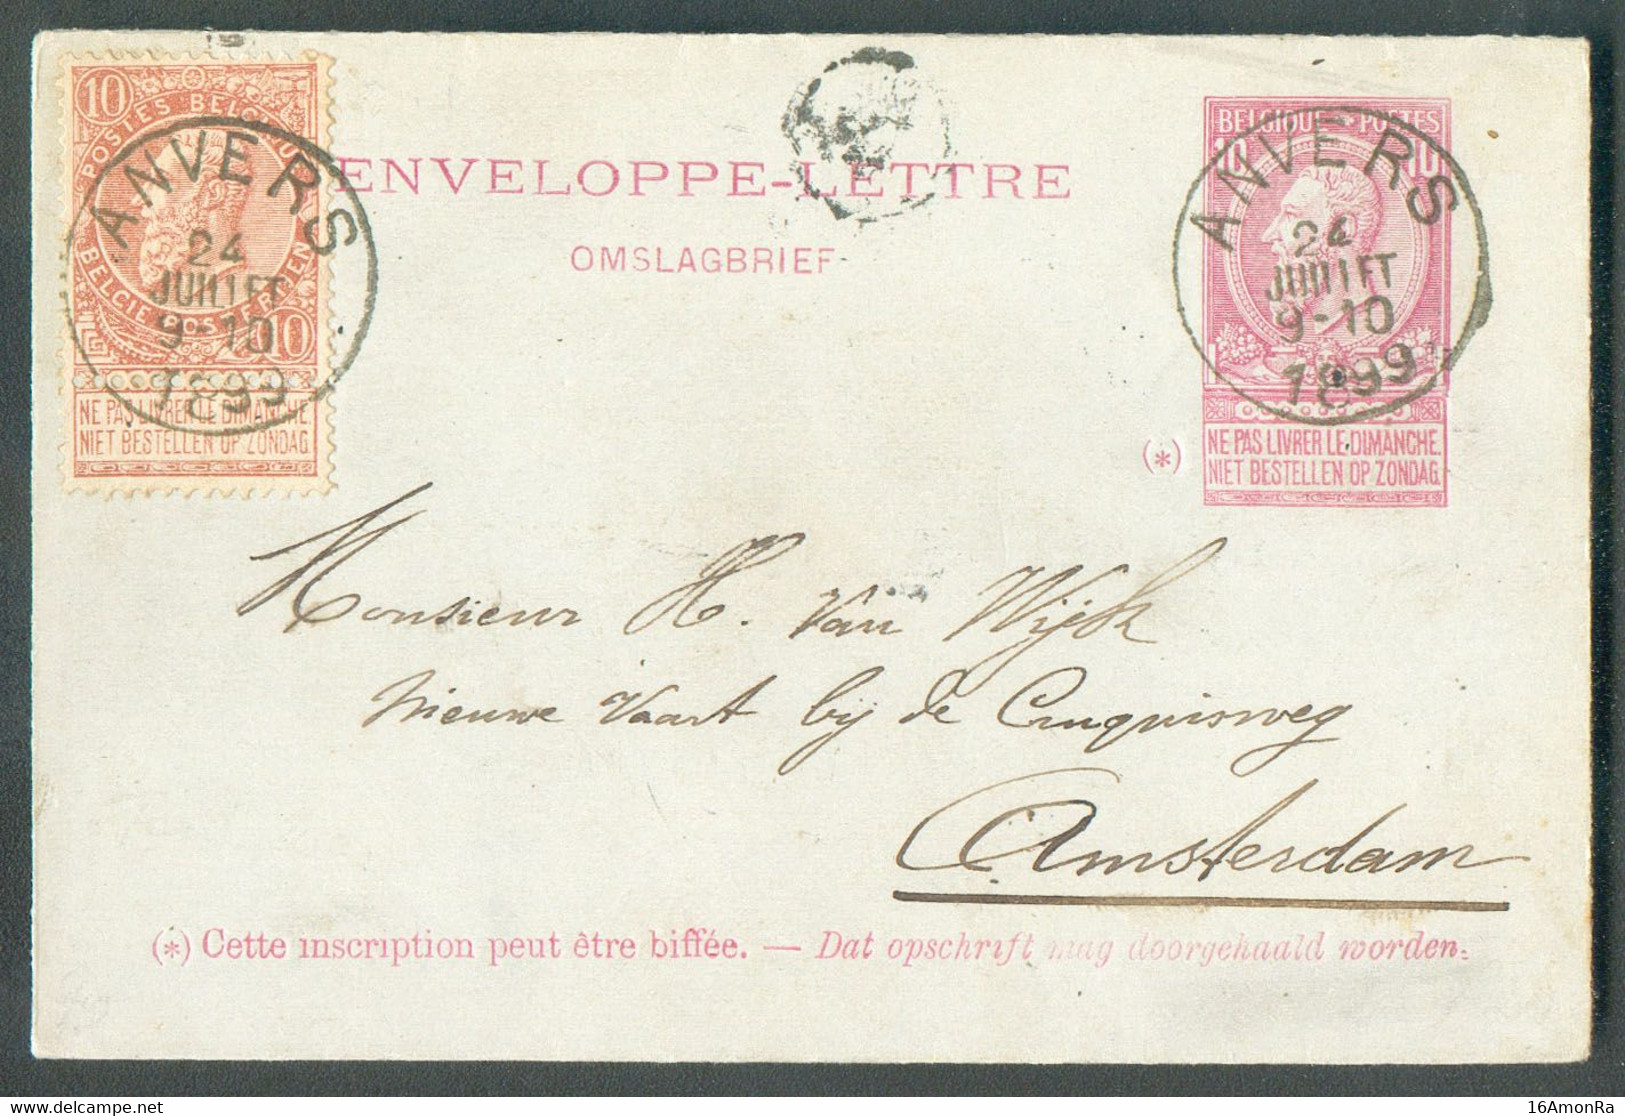 E.P. Enveloppe-lettre 10c. Fine Barbe + Tp 10 Centimes Obl. Sc ANVERS Du 24 Juillet 1899 Vers Amsterdam - 20335 - Letter Covers